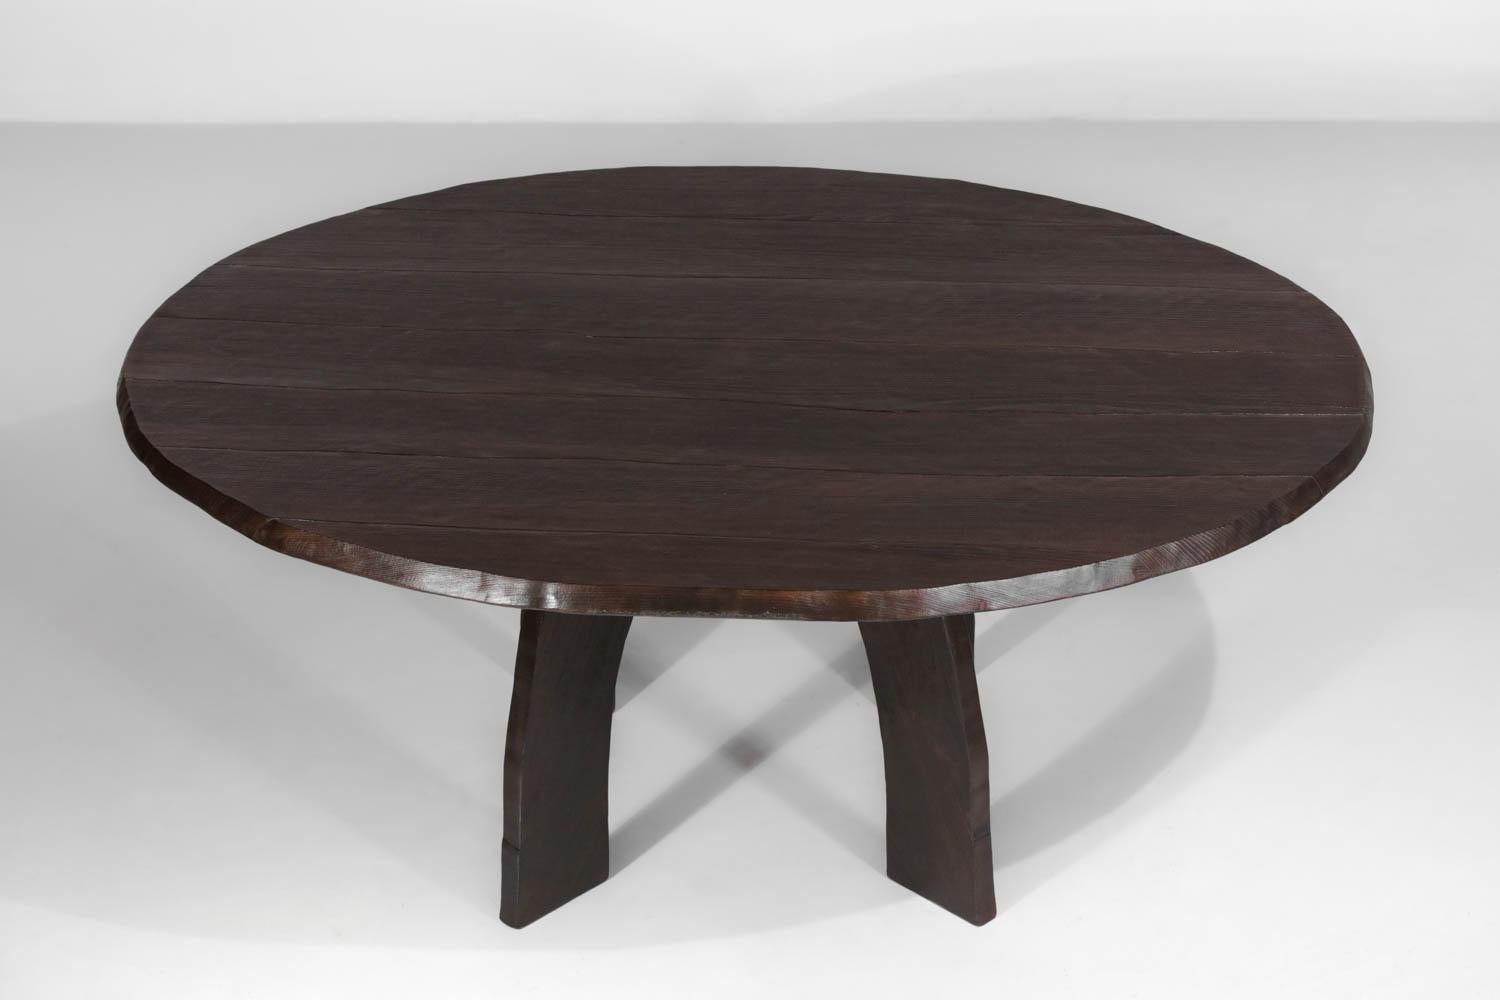 Ovaler Tisch aus gebranntem Massivholz, vollständig handgefertigt in der Lyoner Werkstatt des Schreiners Vincent Vincent. Dieser Tisch ergänzt die bereits auf der Website erhältlichen Stühle und Sessel zu einem einzigartigen Esszimmer-Set. Jeder